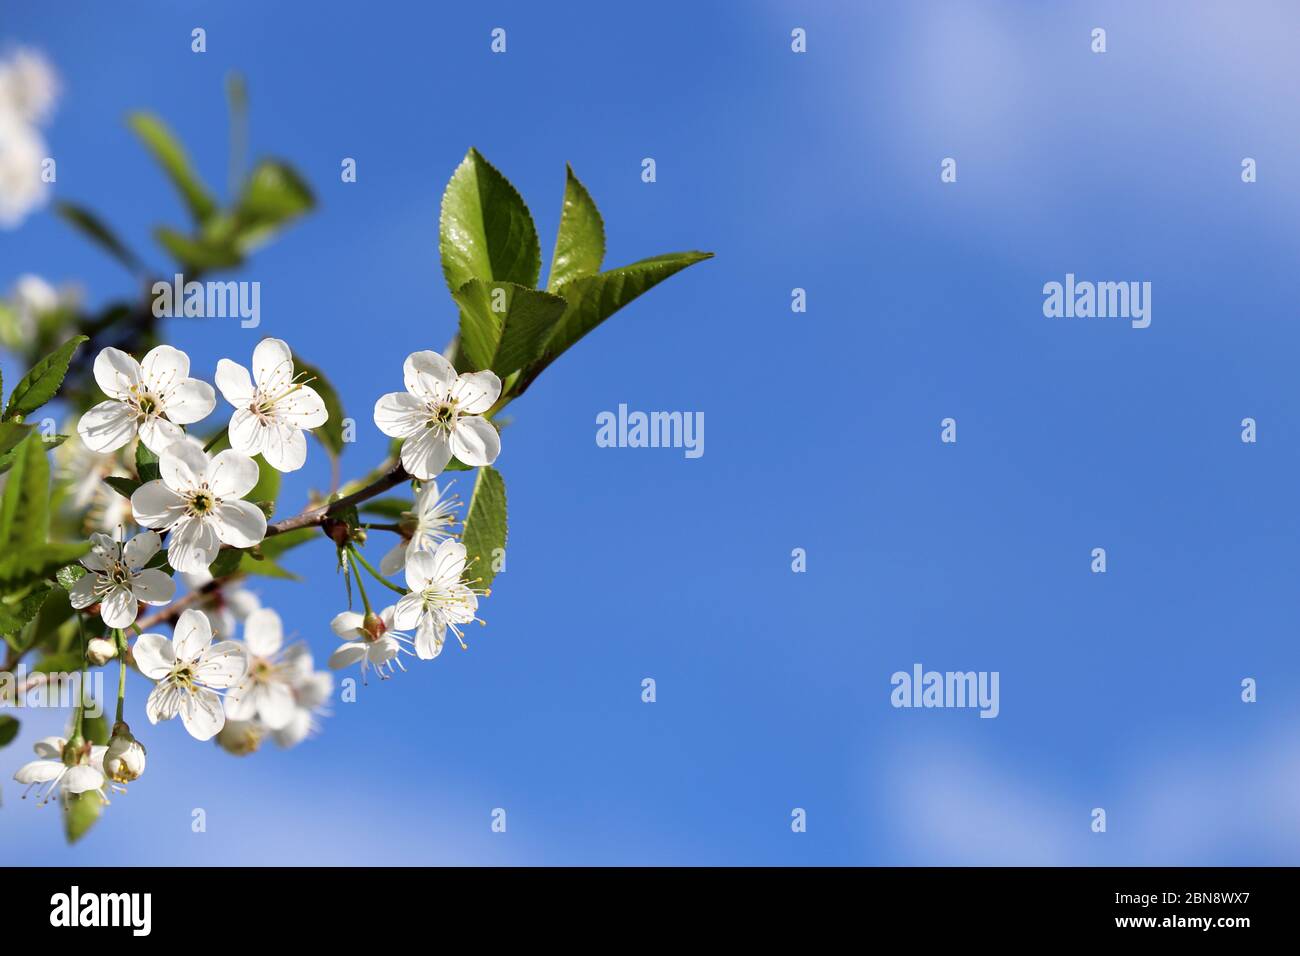 Cerisier fleuri au printemps isolé sur ciel bleu, fond floral pour carte romantique. Fleurs blanches sur une branche avec espace de copie libre, couleurs douces Banque D'Images